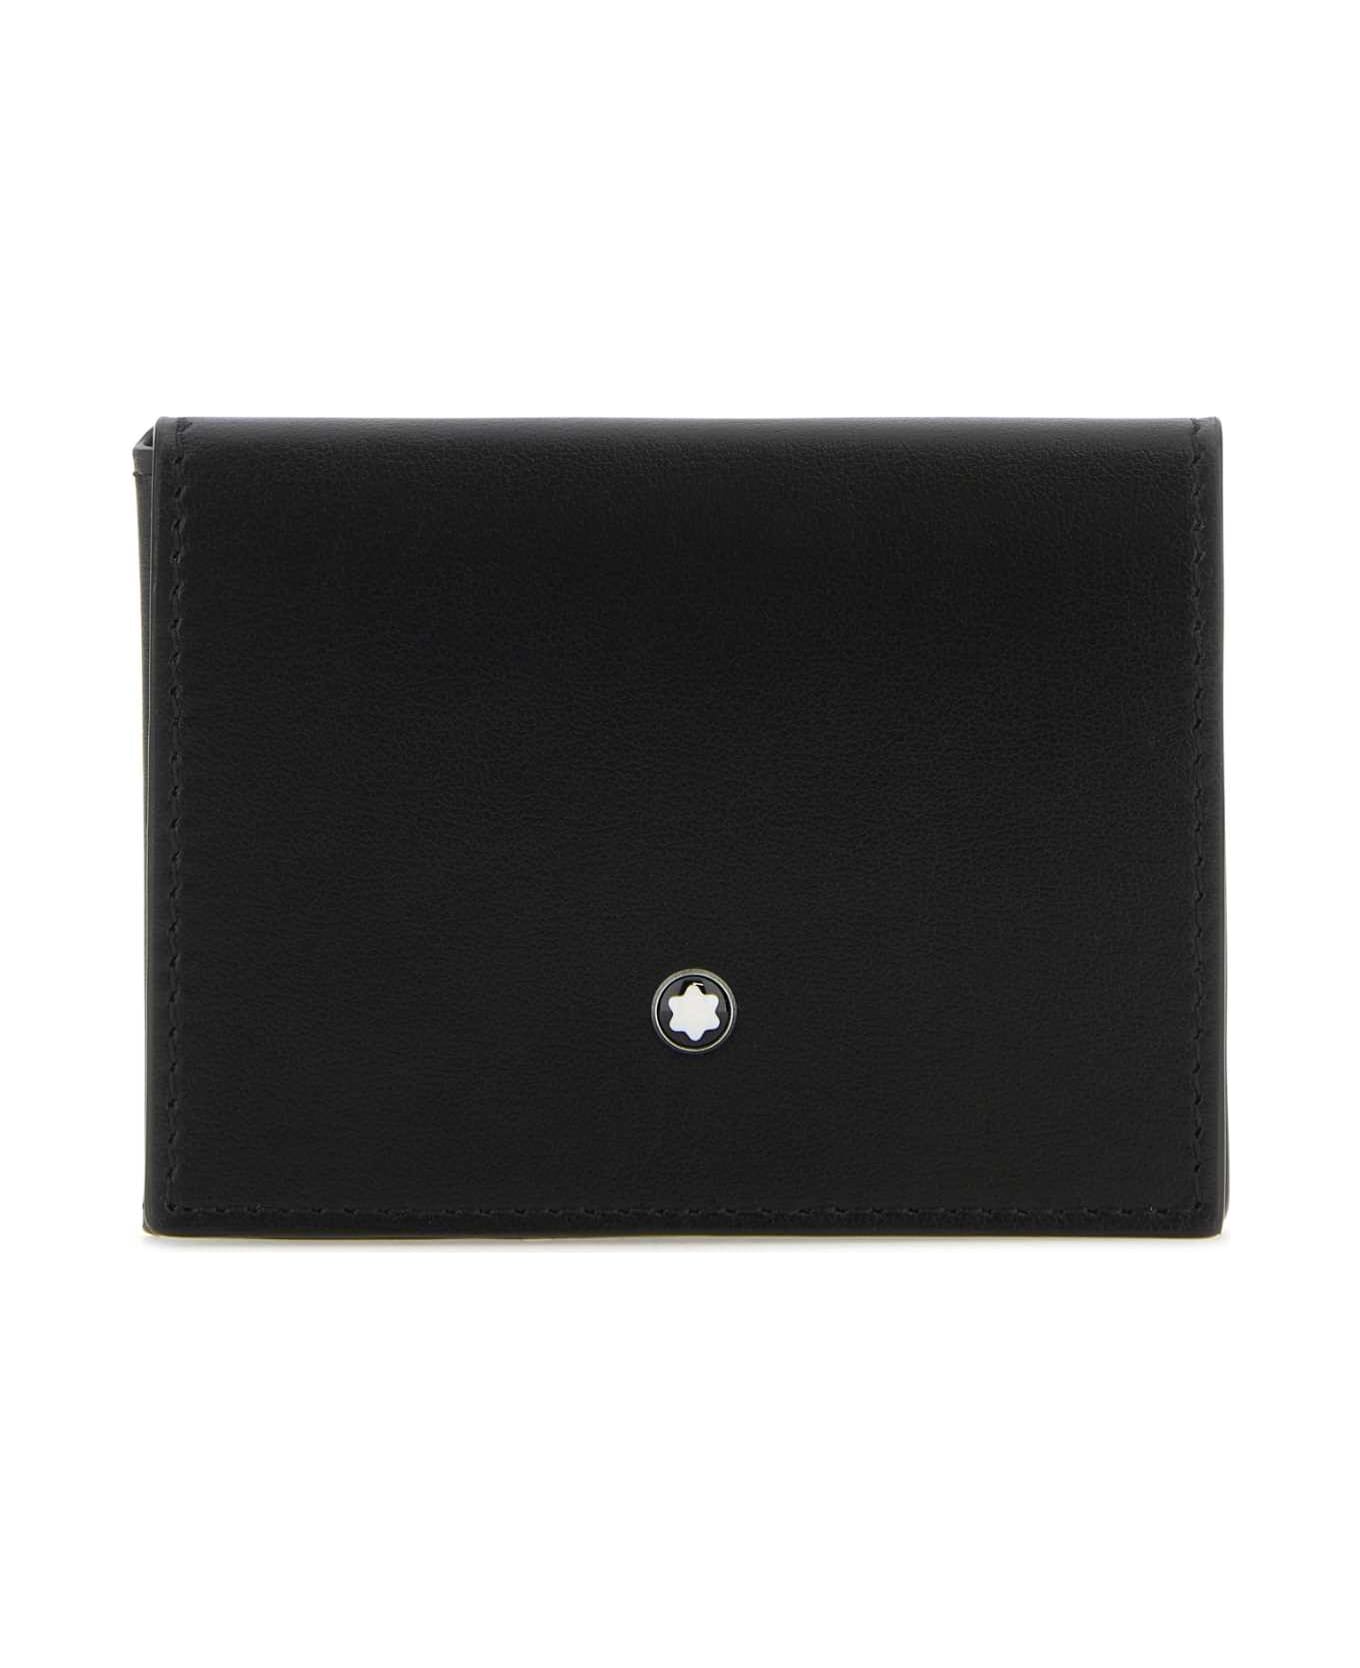 Montblanc Black Leather Card Holder - BLACK